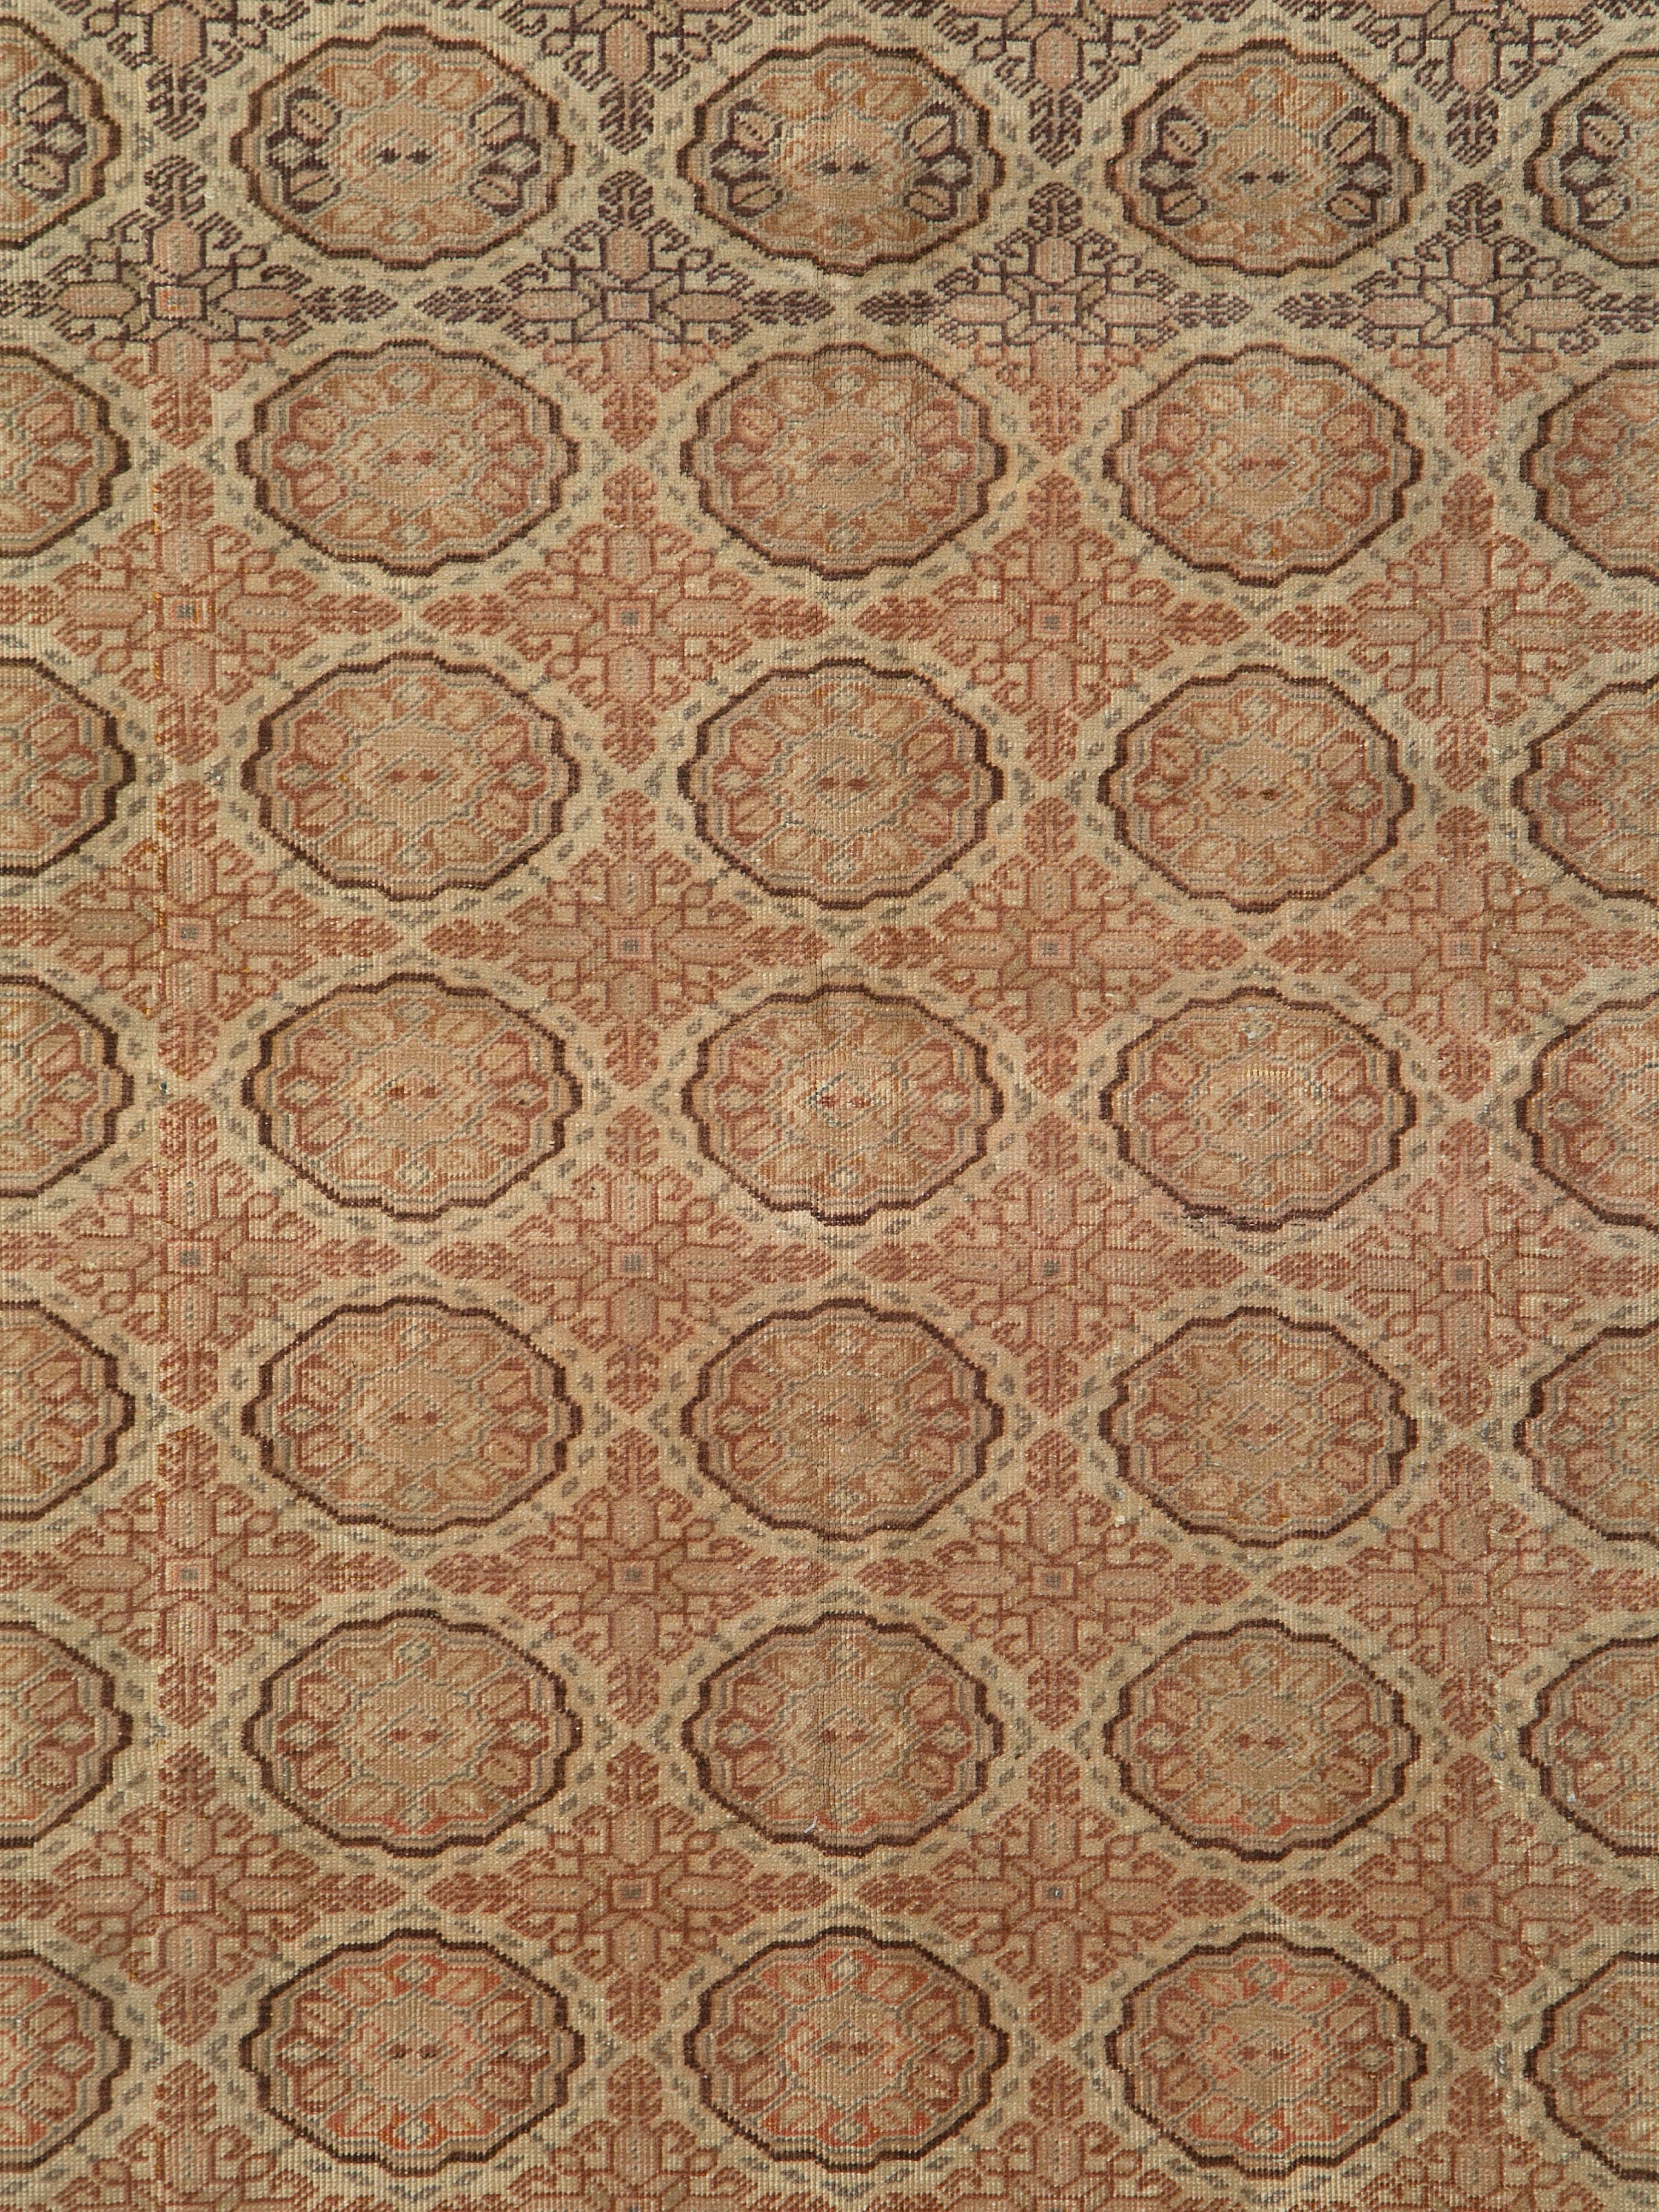 Ein alter türkischer Sivas-Teppich aus dem zweiten Viertel des 20. Jahrhunderts.